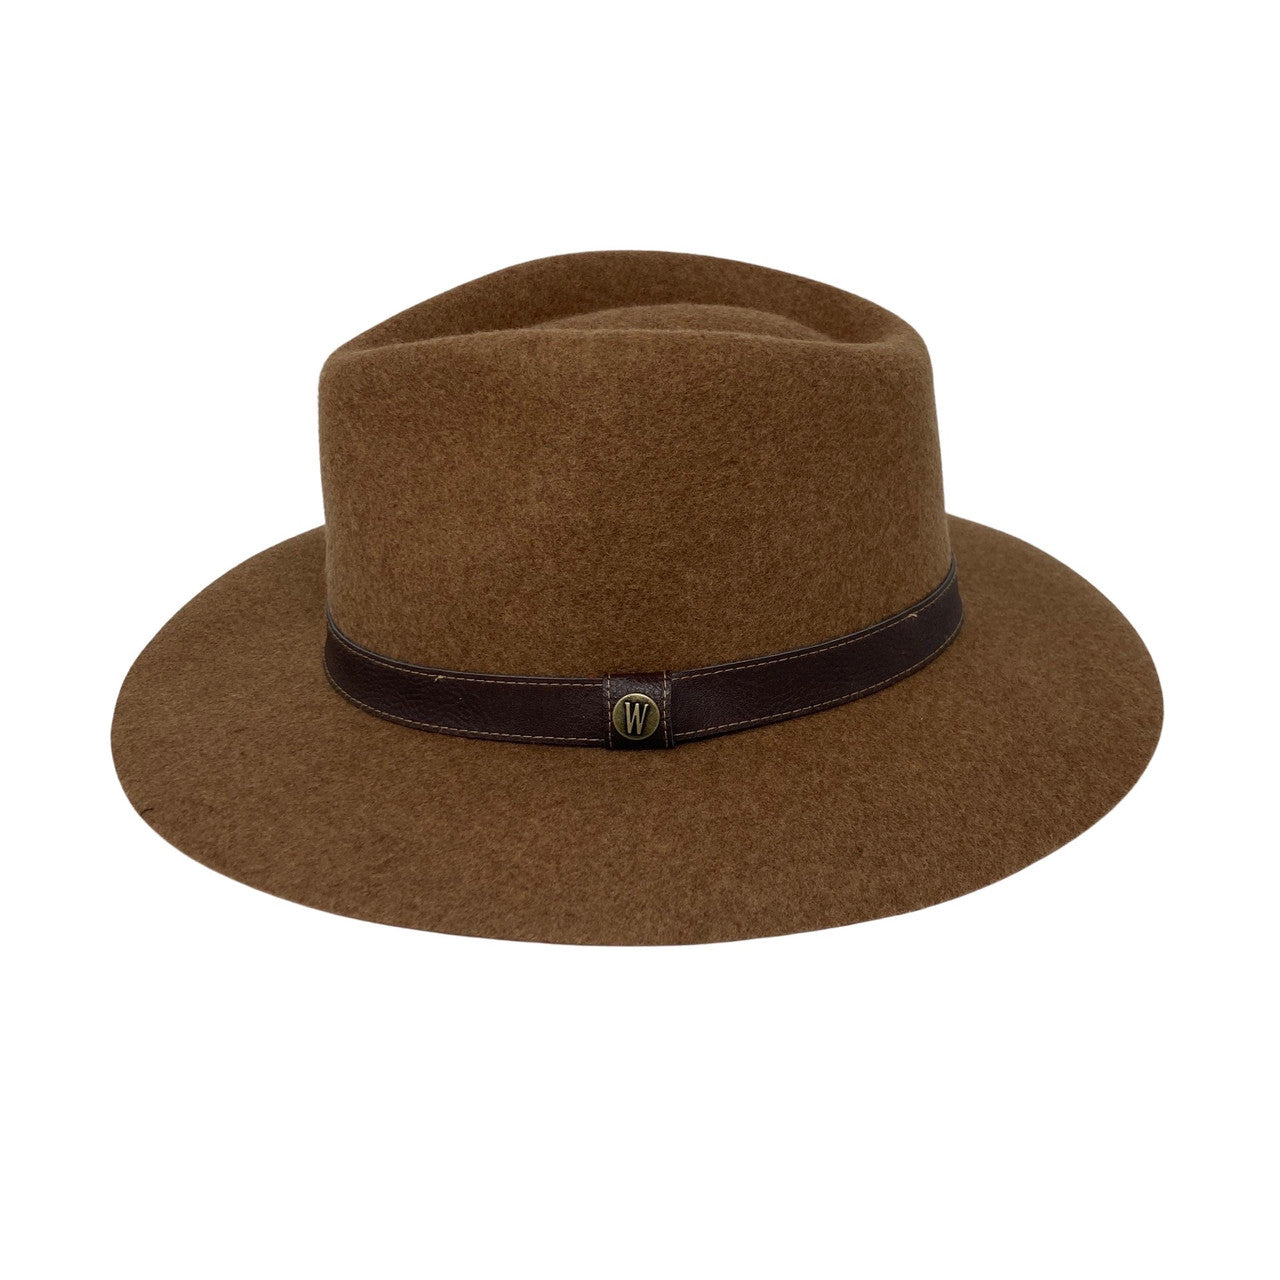 Wallaroo Hat Company Wool Felt Durango Fedora-brown side